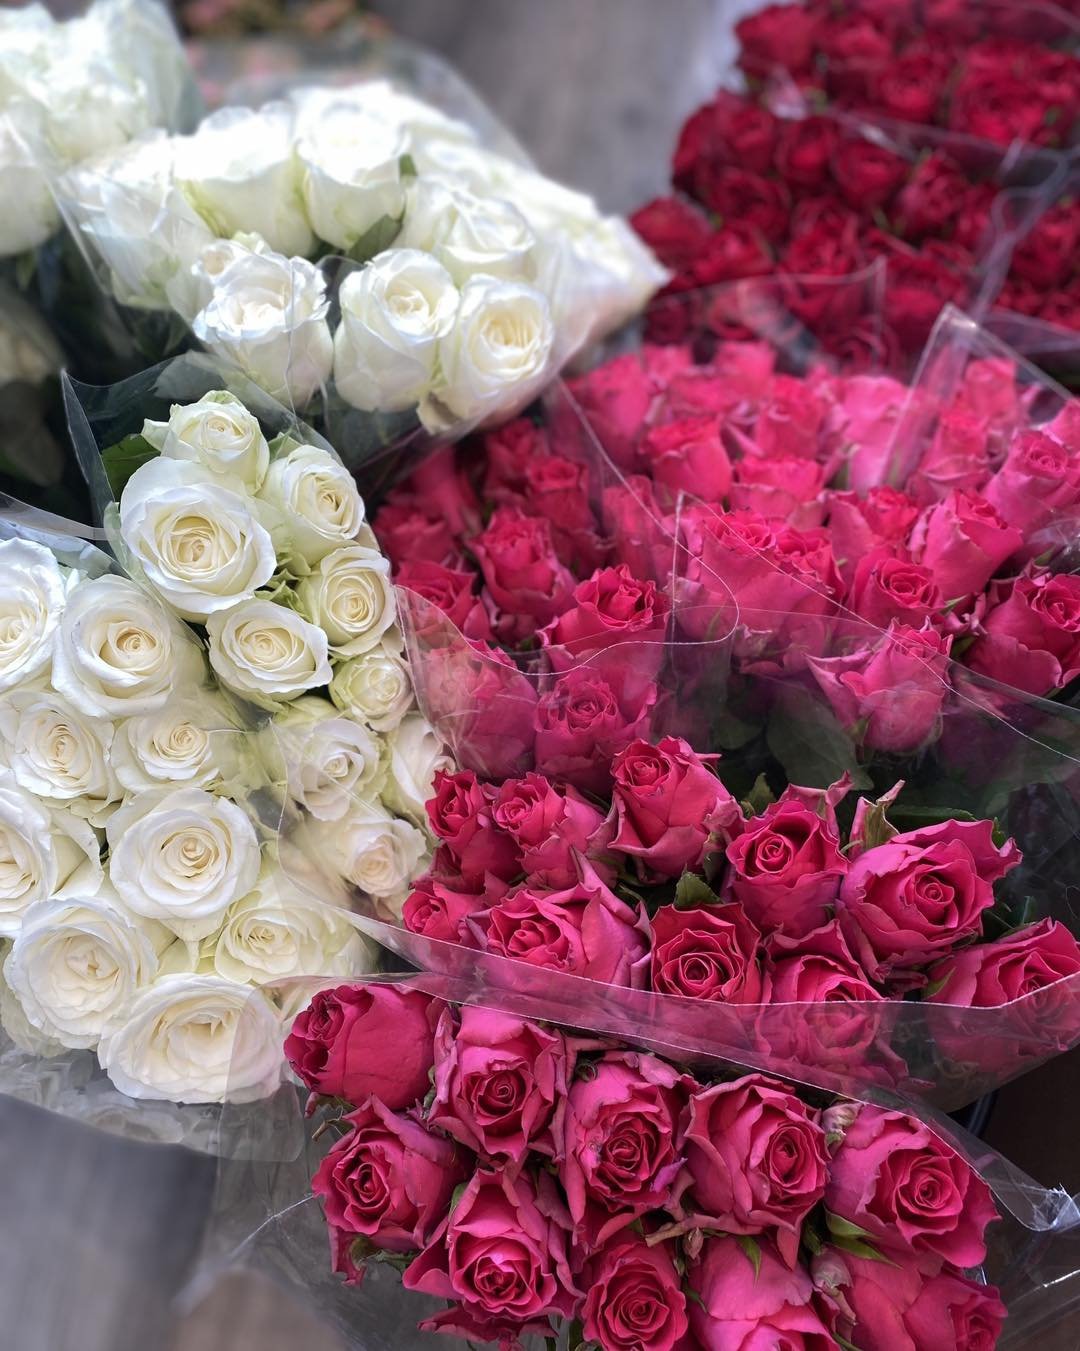 Vi har mottatt en ny forsendelse med vakre blomster i dag !! 🌸✨

Kom innom butikken og se det flotte utvalget vi har f&aring;tt inn. Det er noe for enhver smak, enten du leter etter friske snittblomster til &aring; lyse opp hjemmet ditt eller vakre 